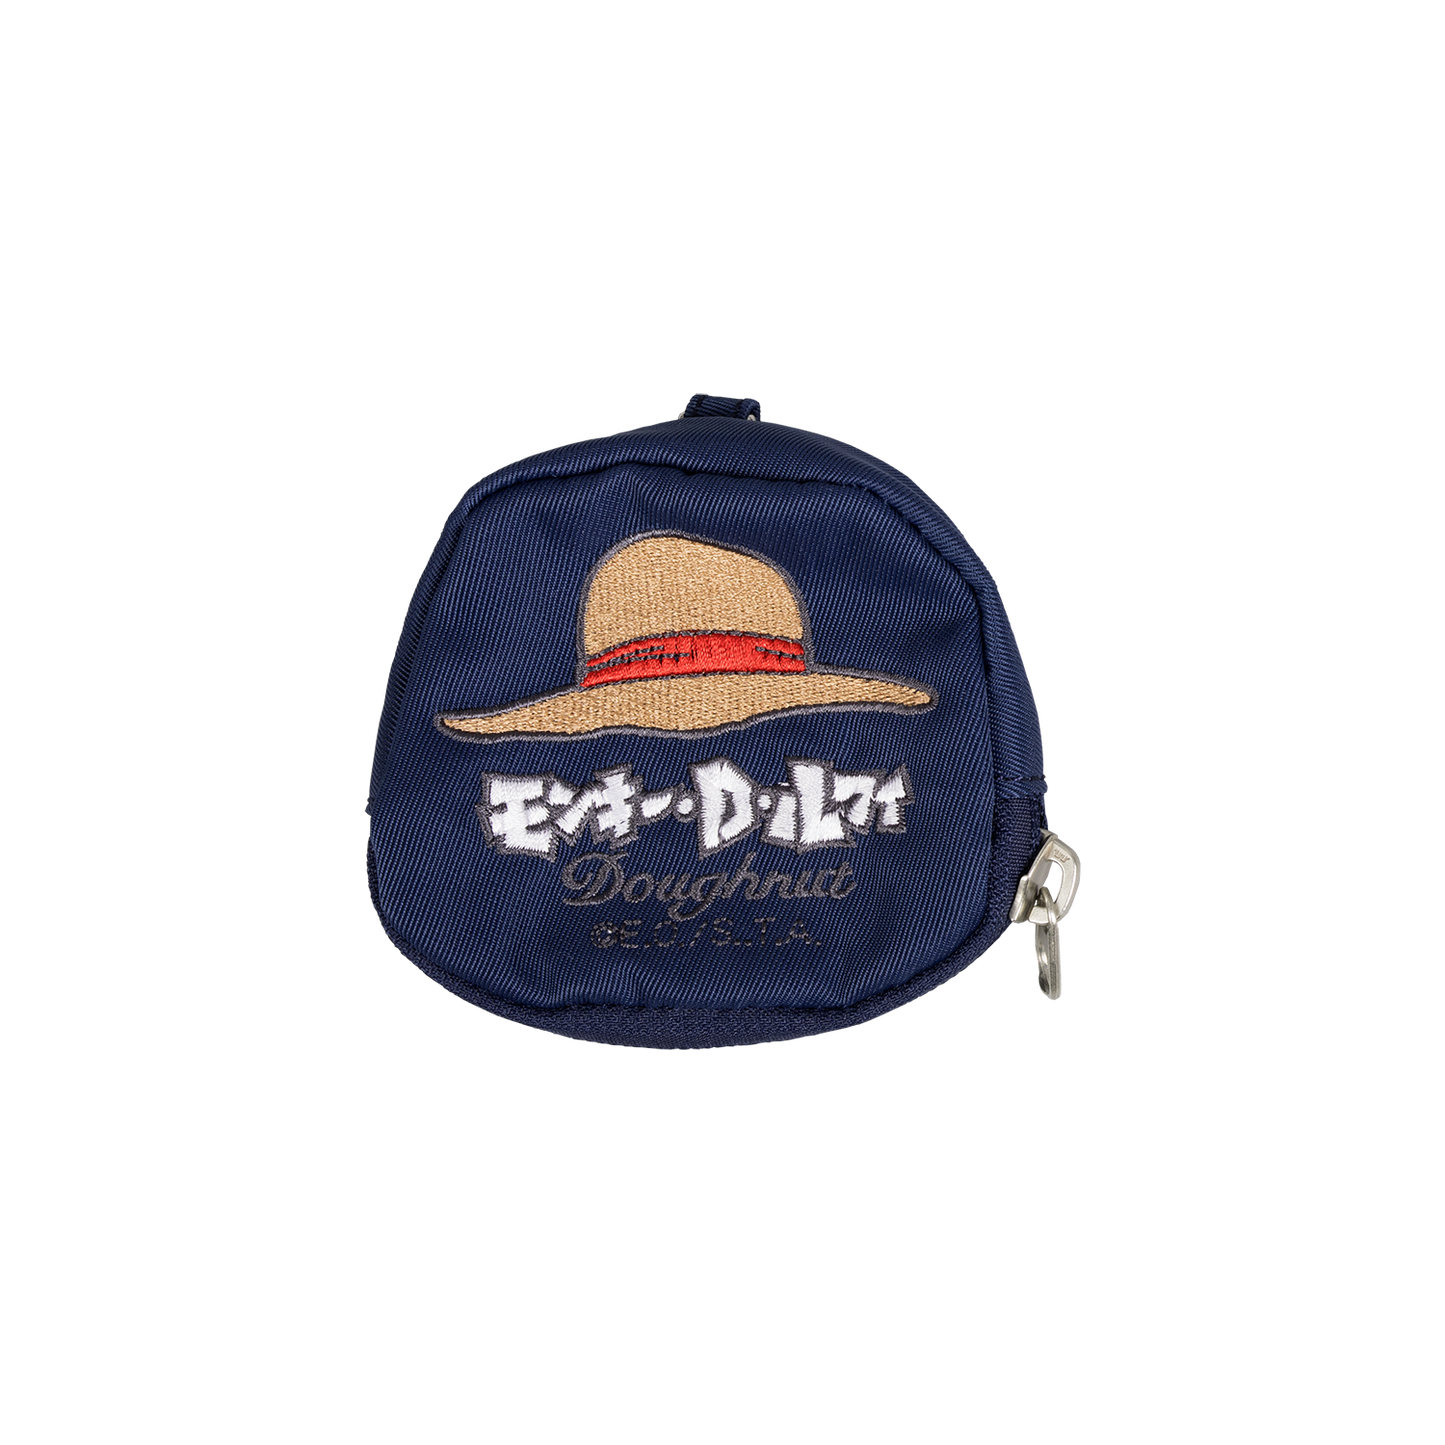 Dn X One Piece Purse Coins Bag